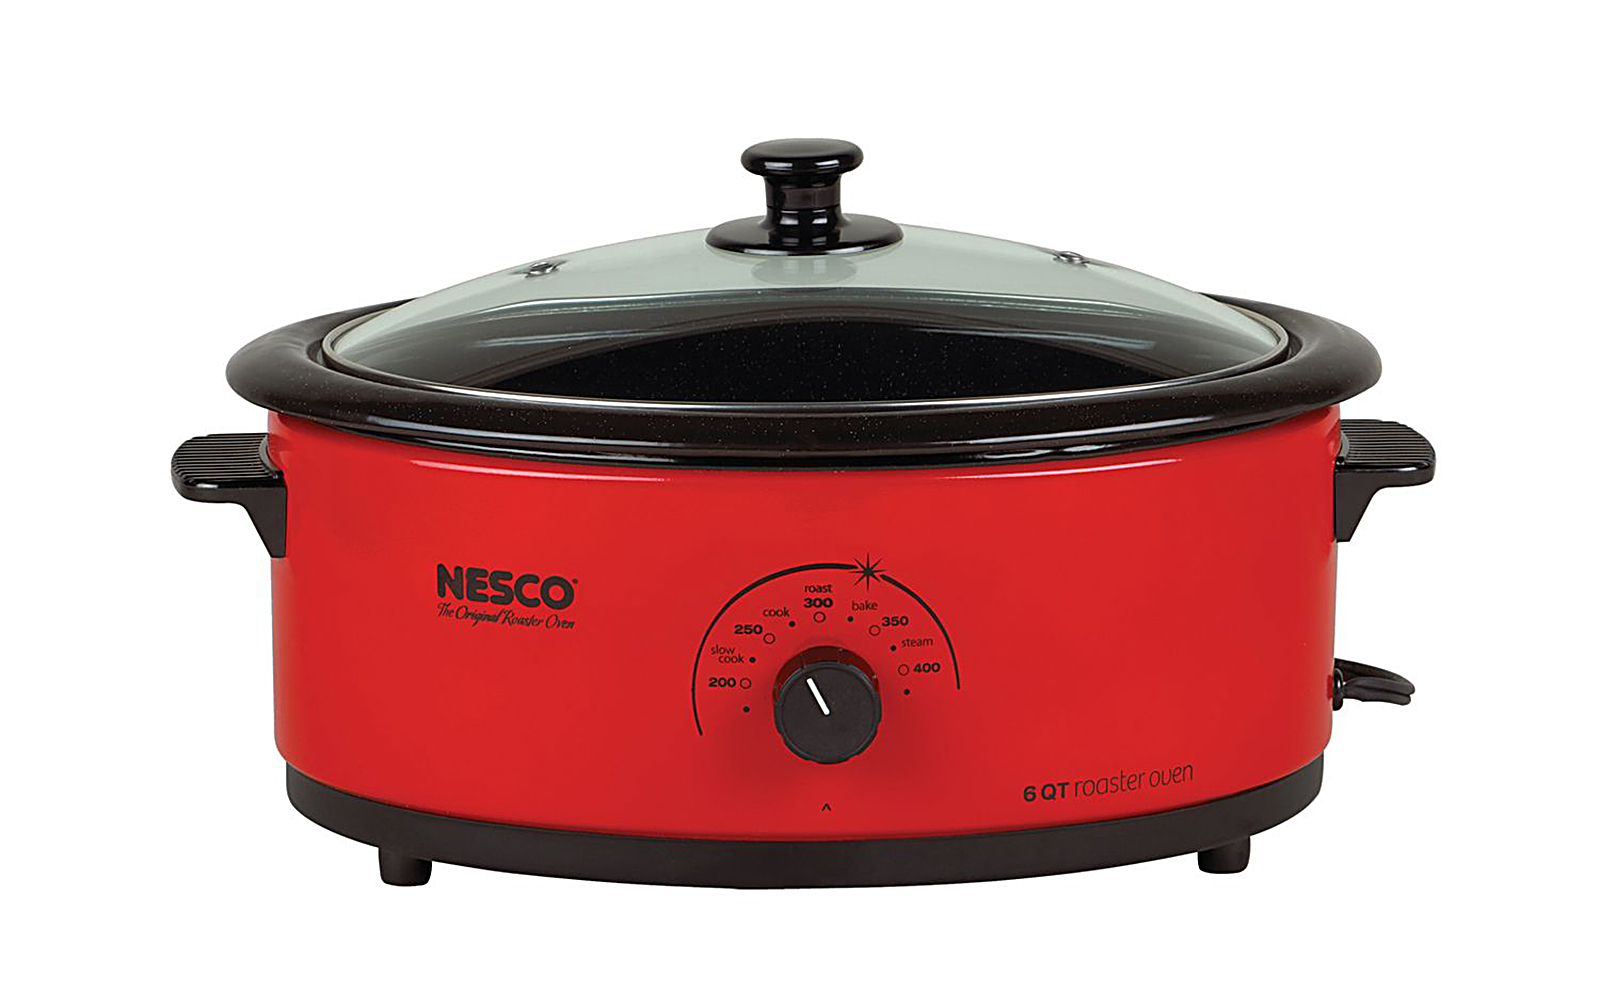 Nesco 4816-12G 6 Qt. Roaster Oven- Red - Porcelain - Glass Cover